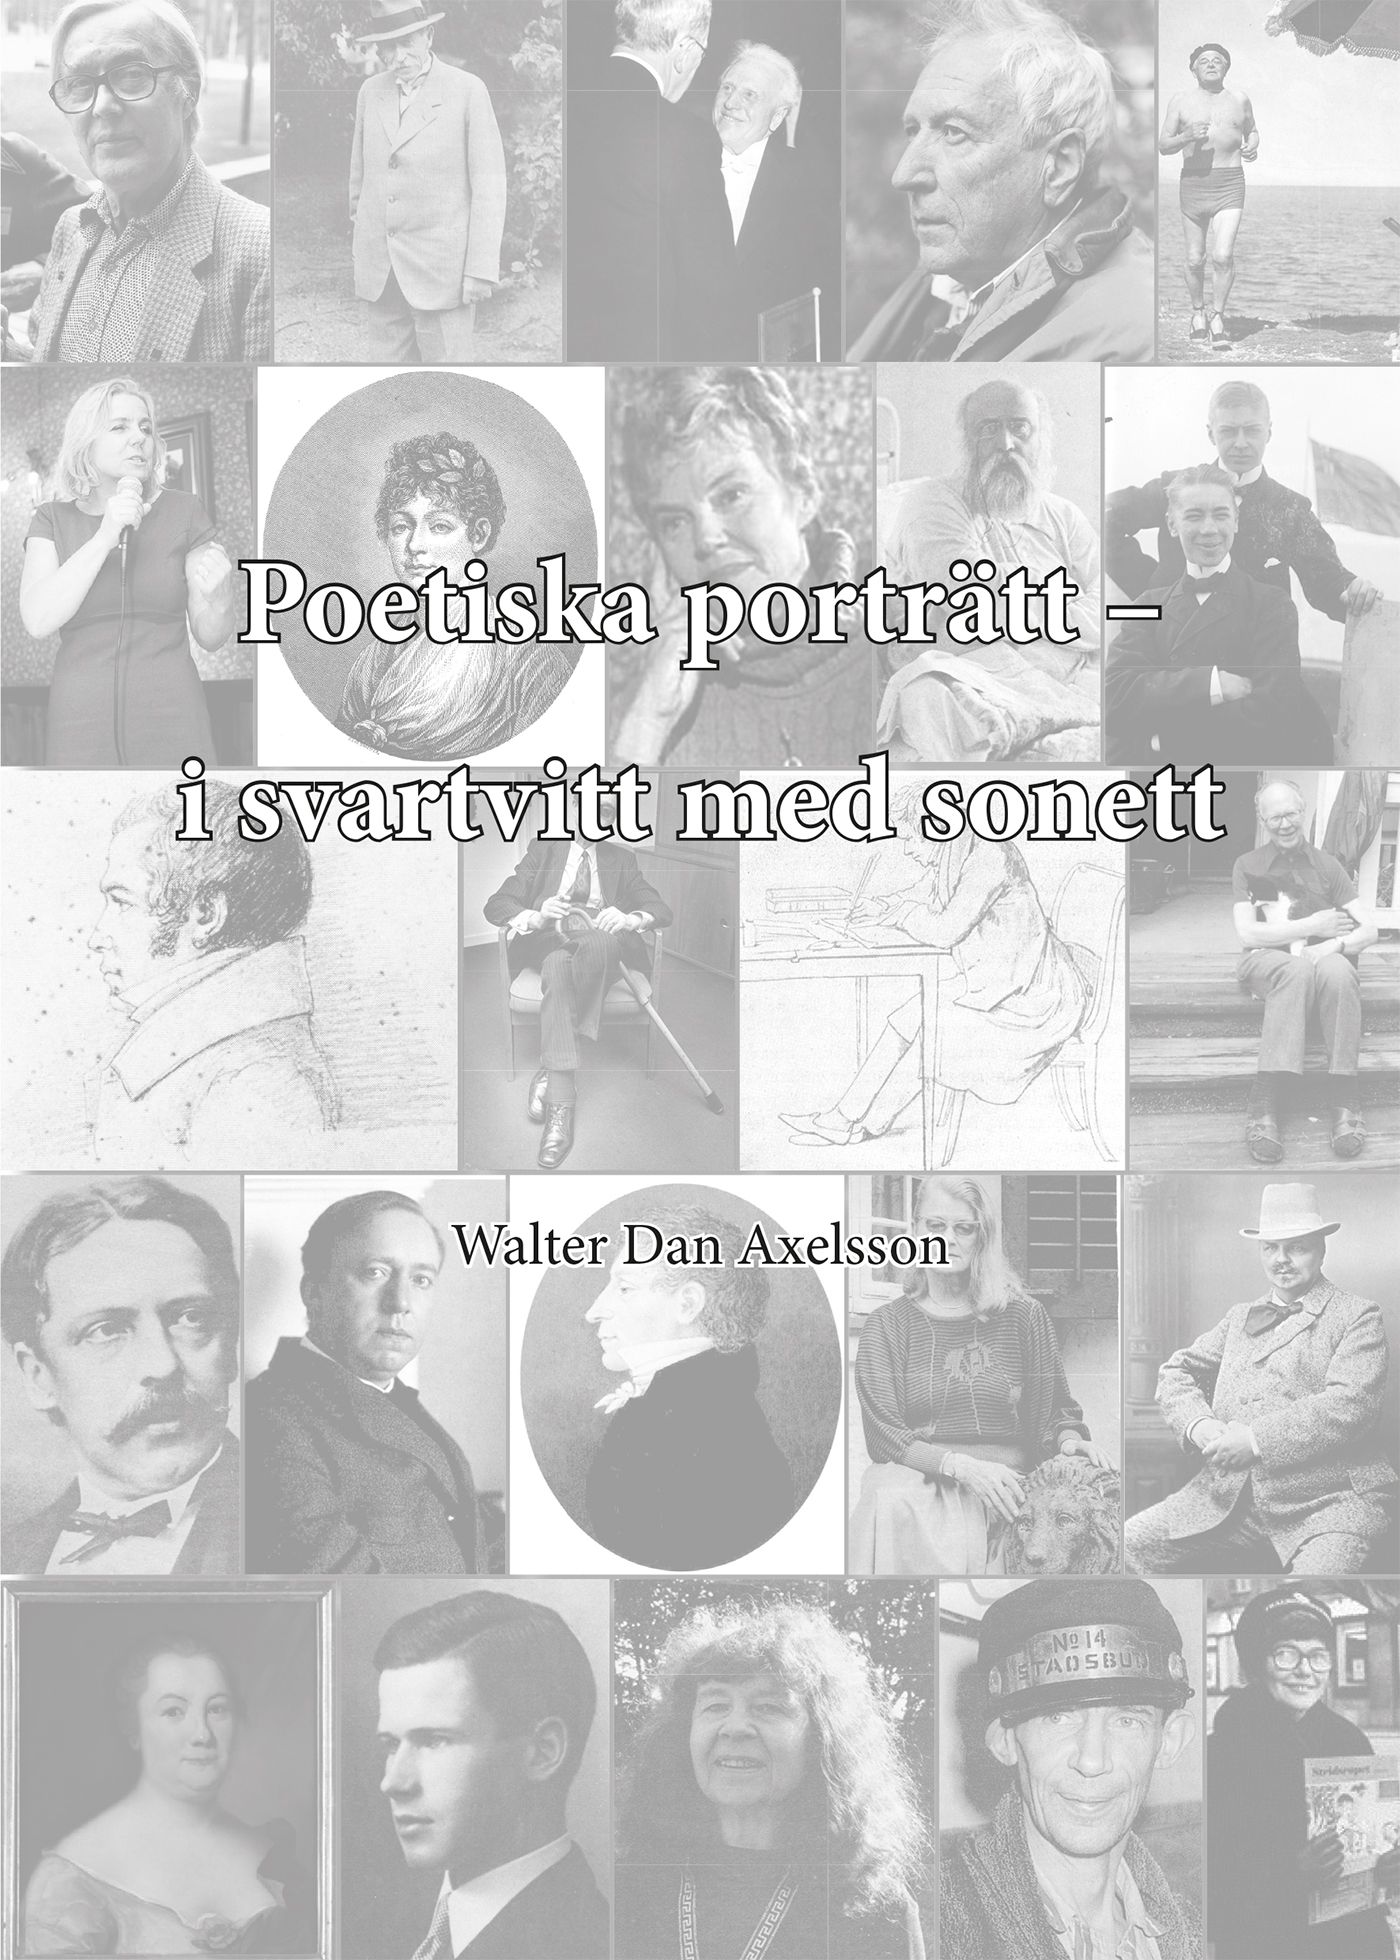 Poetiska porträtt – i svartvitt med sonett, e-bog af Walter Dan Axelsson